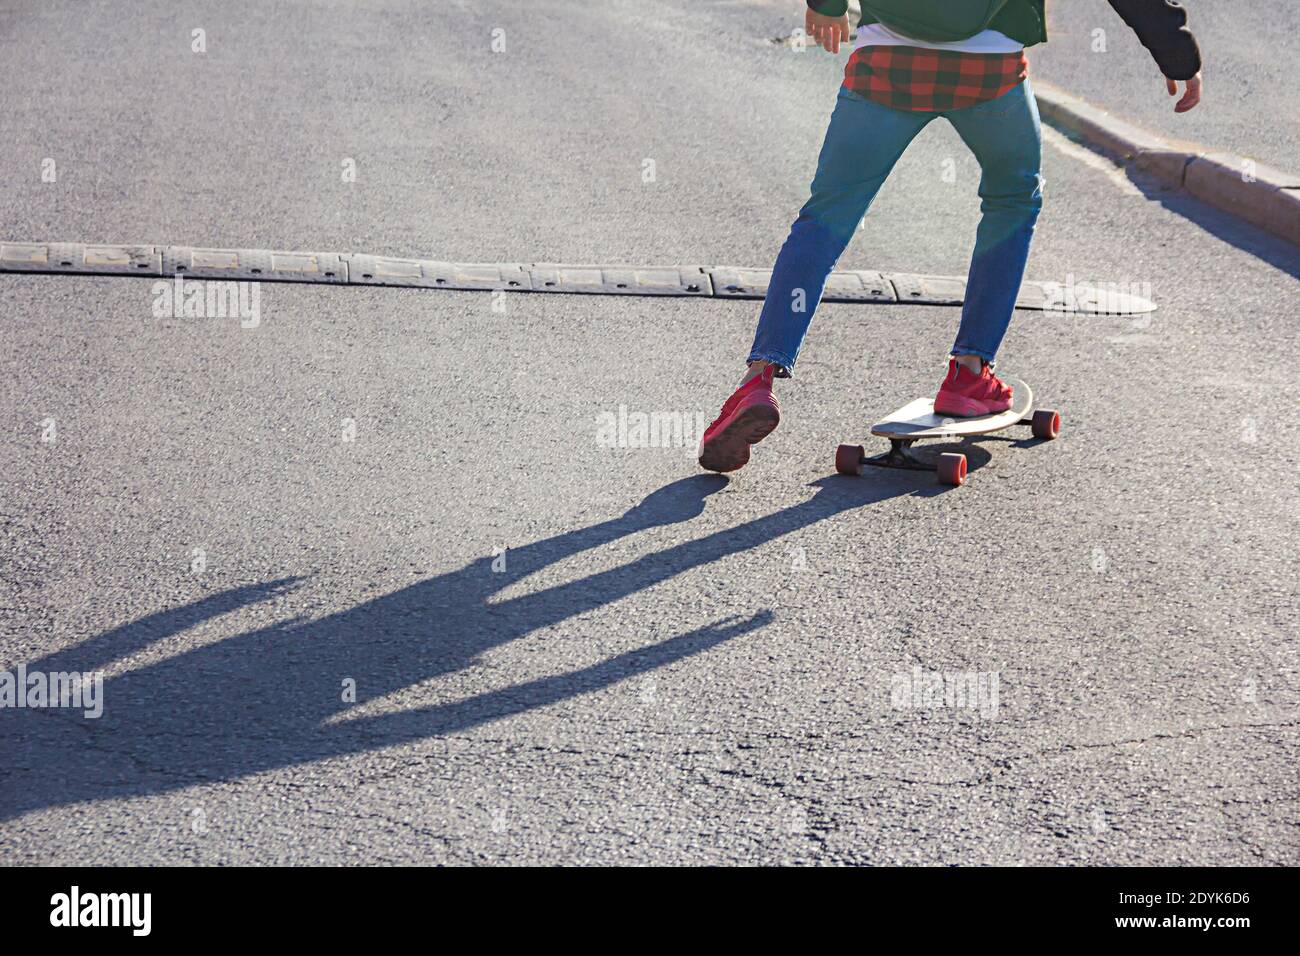 Vista de las piernas de un joven patinador en un monopatín acercándose al bache de velocidad en una calle de la ciudad Foto de stock